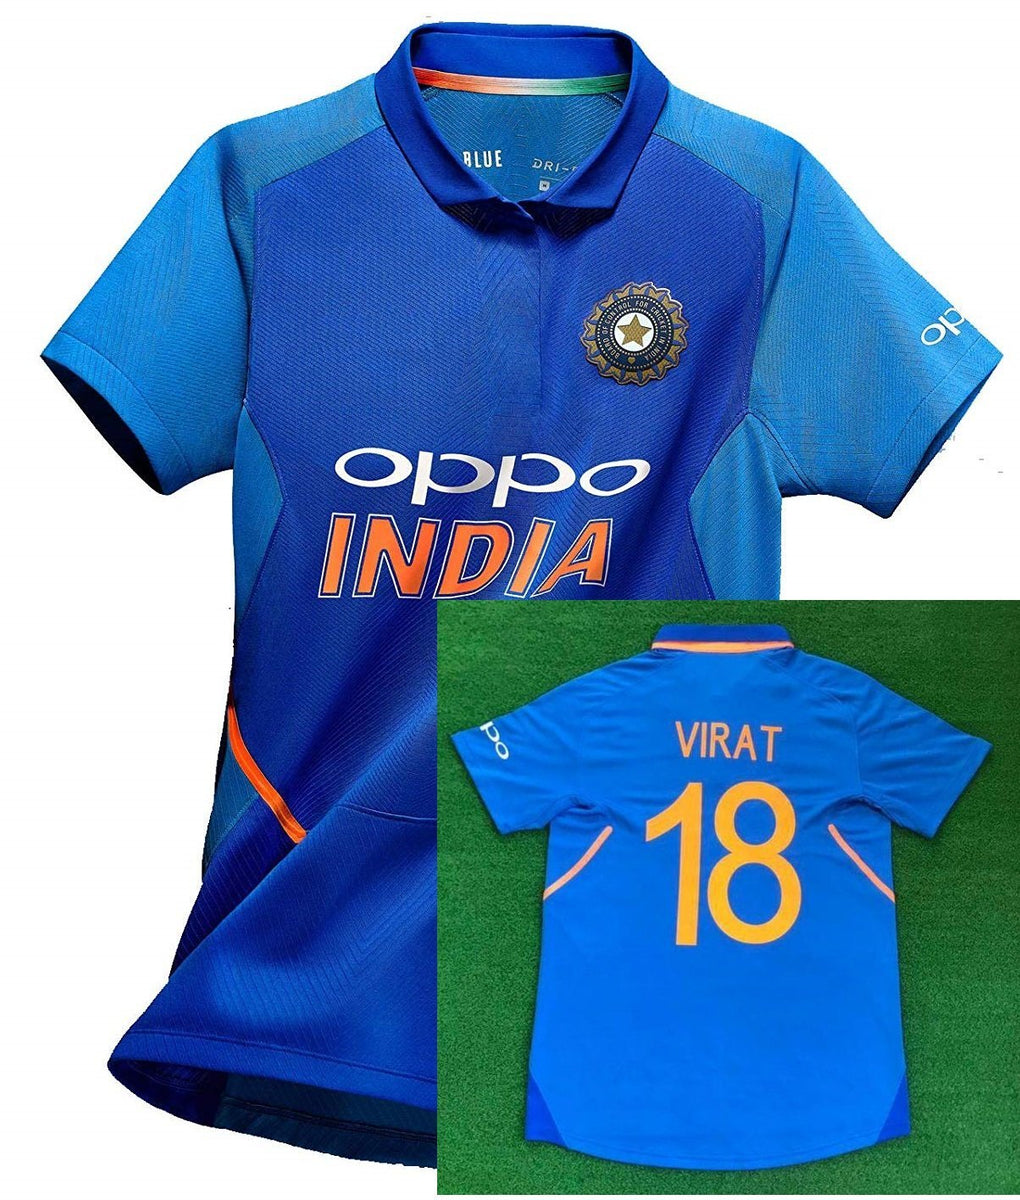 buy indian jersey online